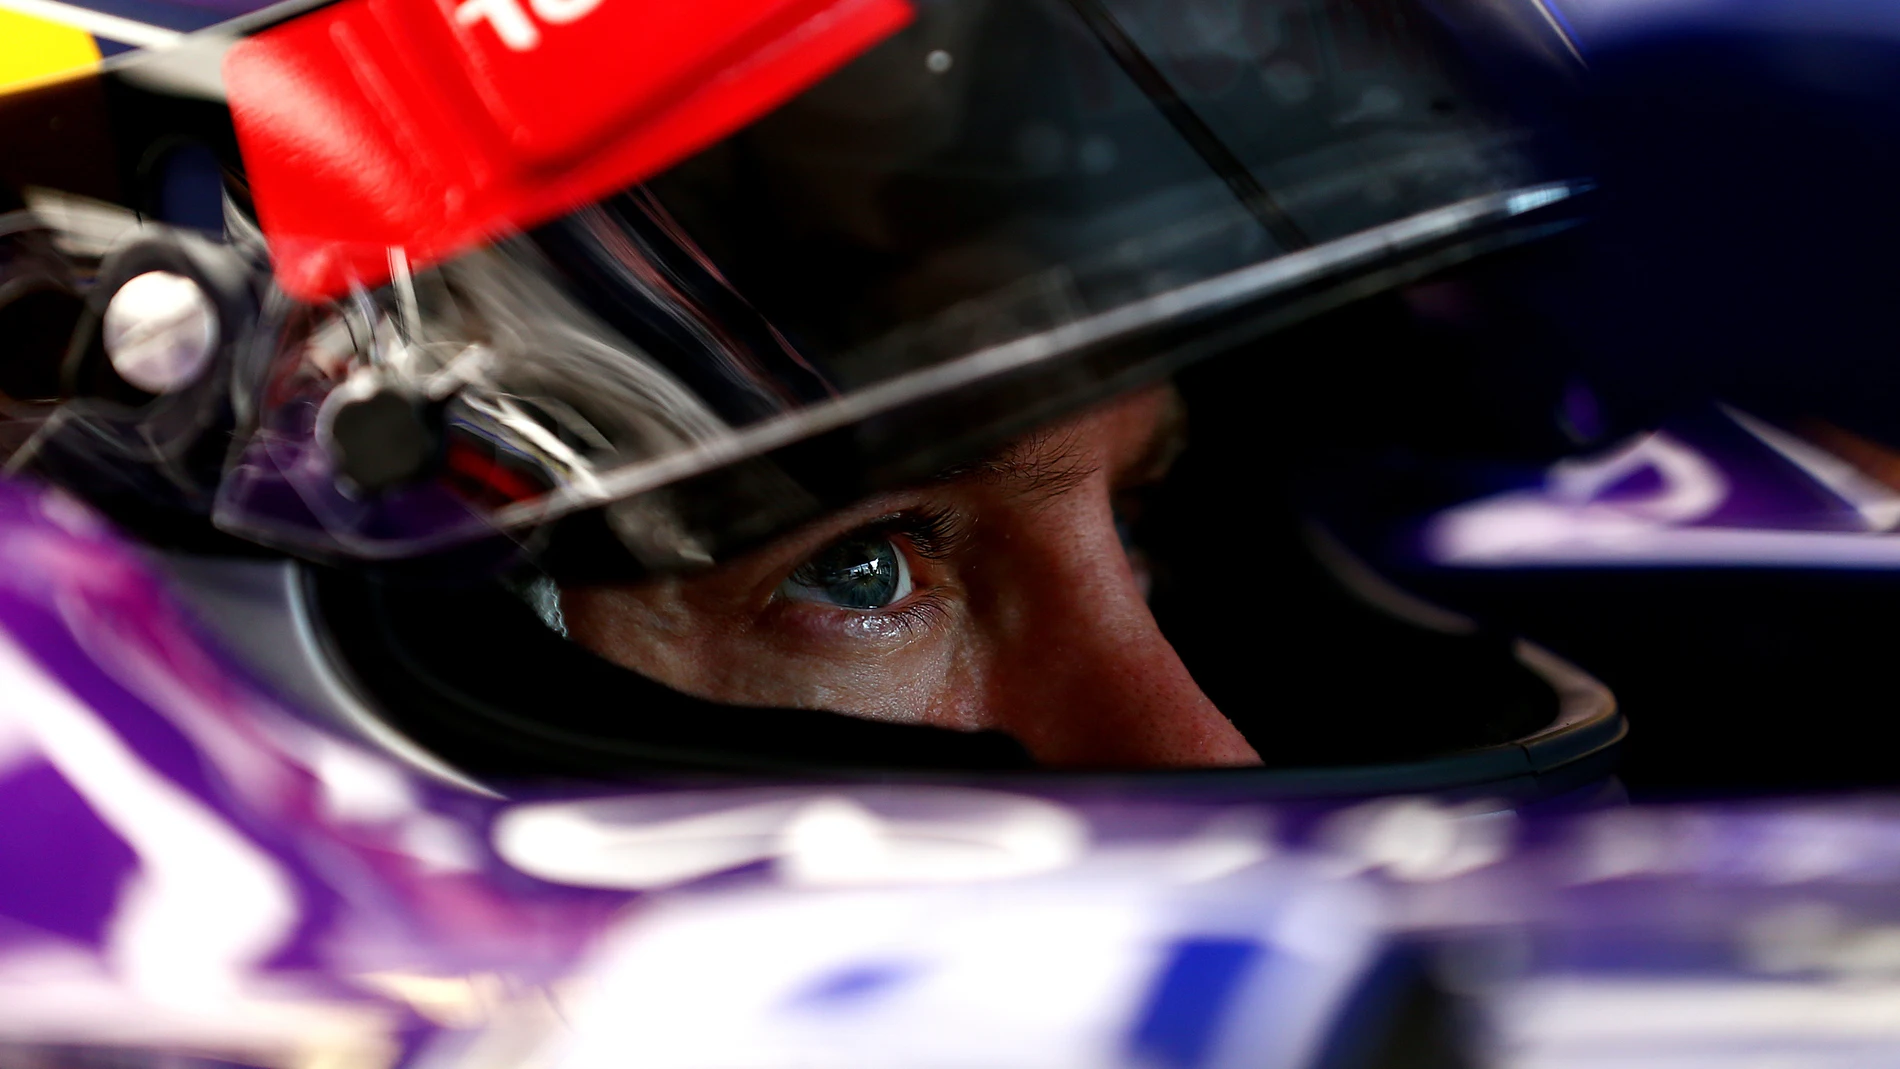 Vettel espera en el garaje